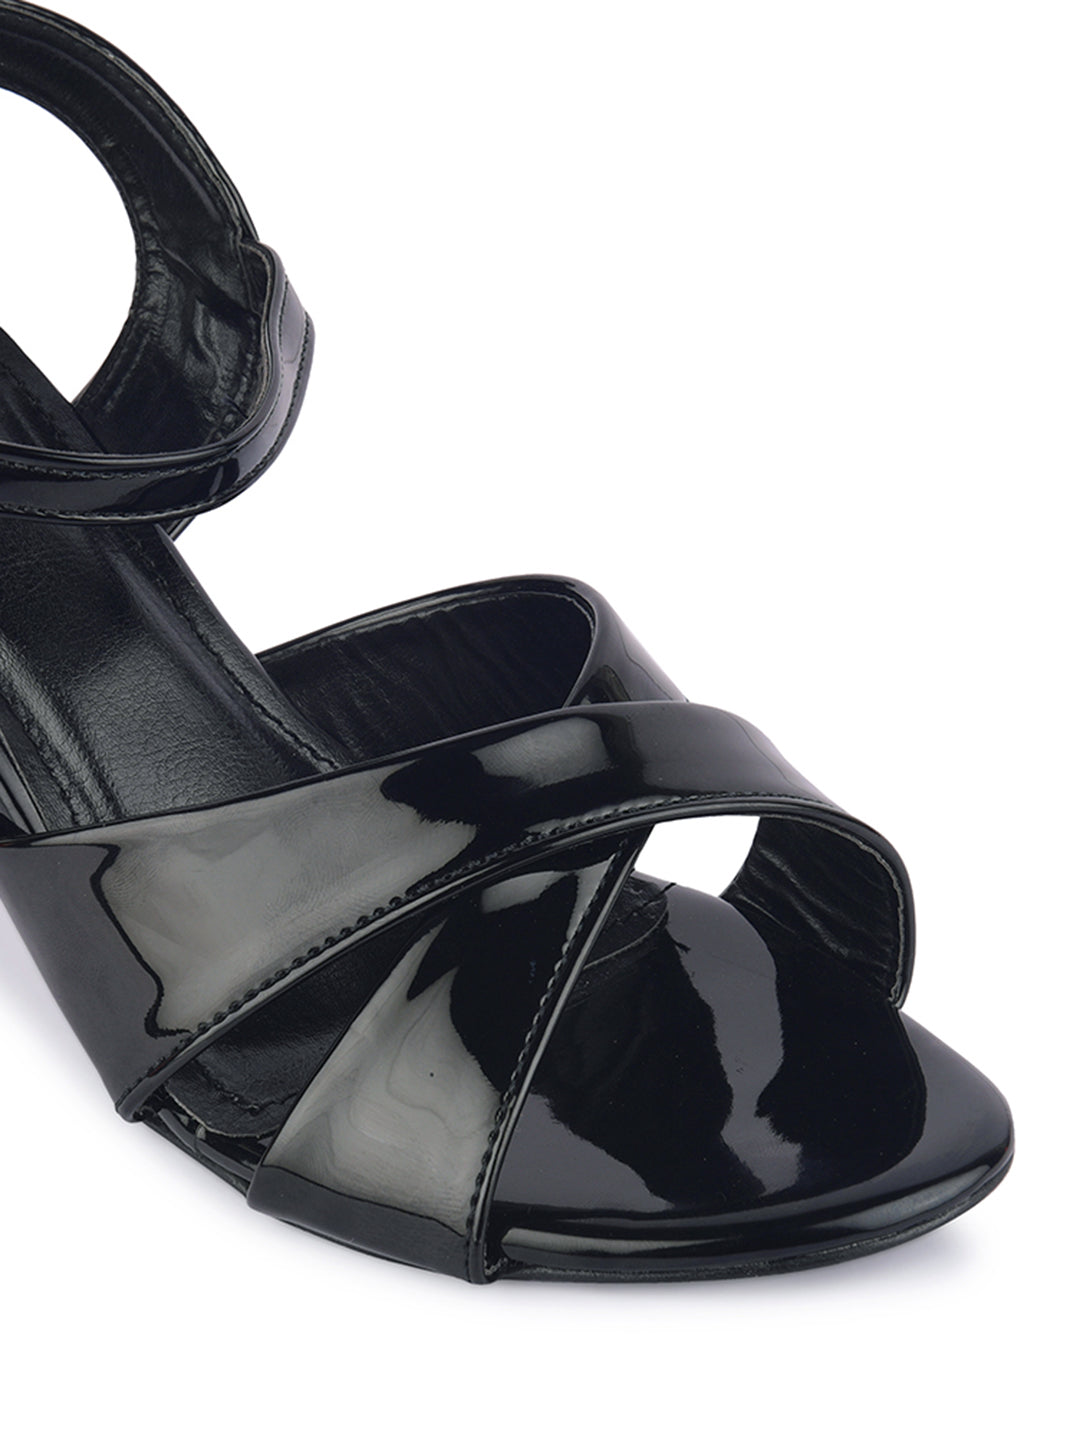 Heels & Wedges | fancy heels black colour 🖤✔️ | Freeup